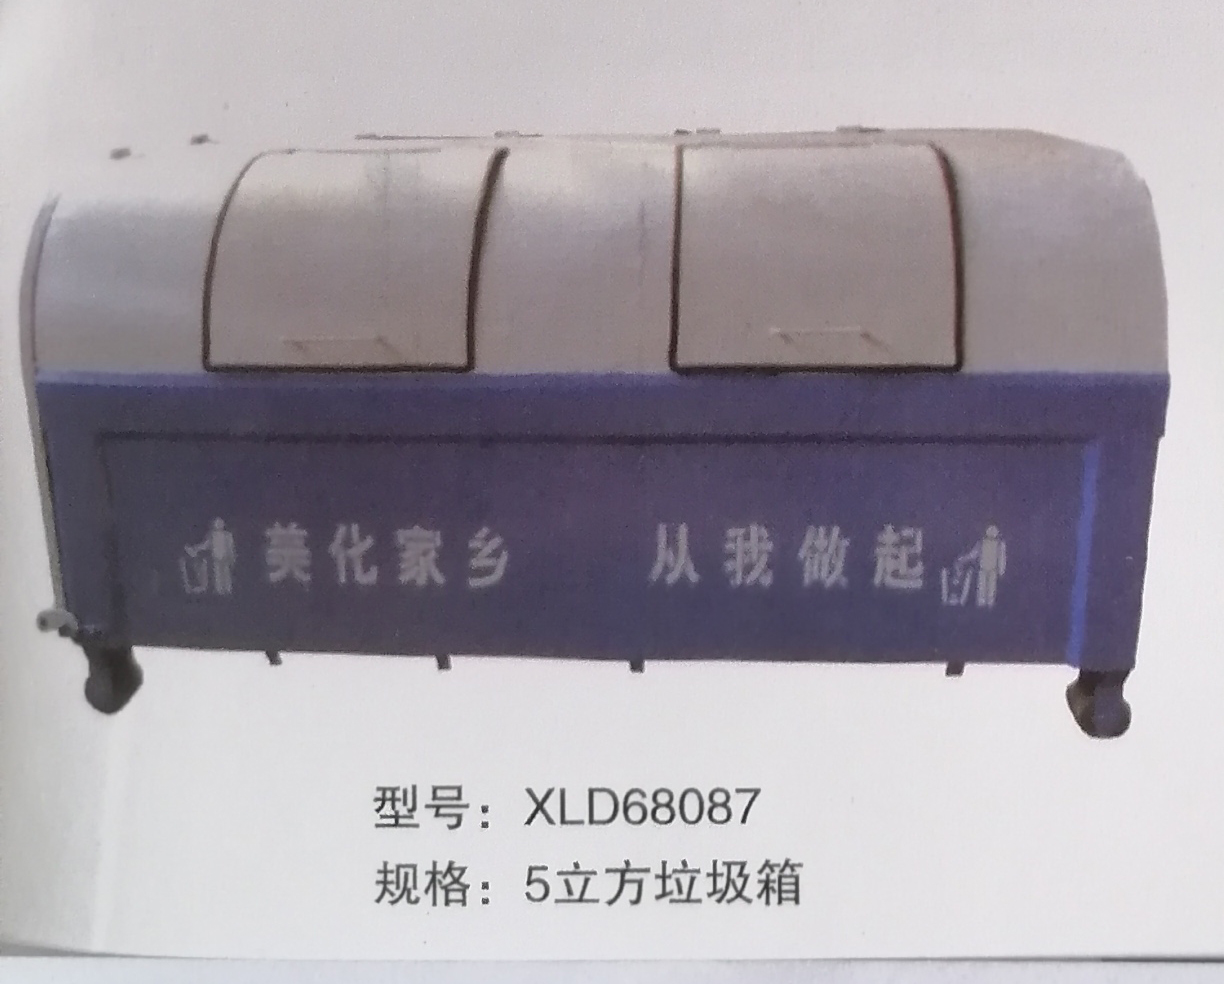 鋼置垃圾箱規格：型號：GT-XLD68087規格：5立方